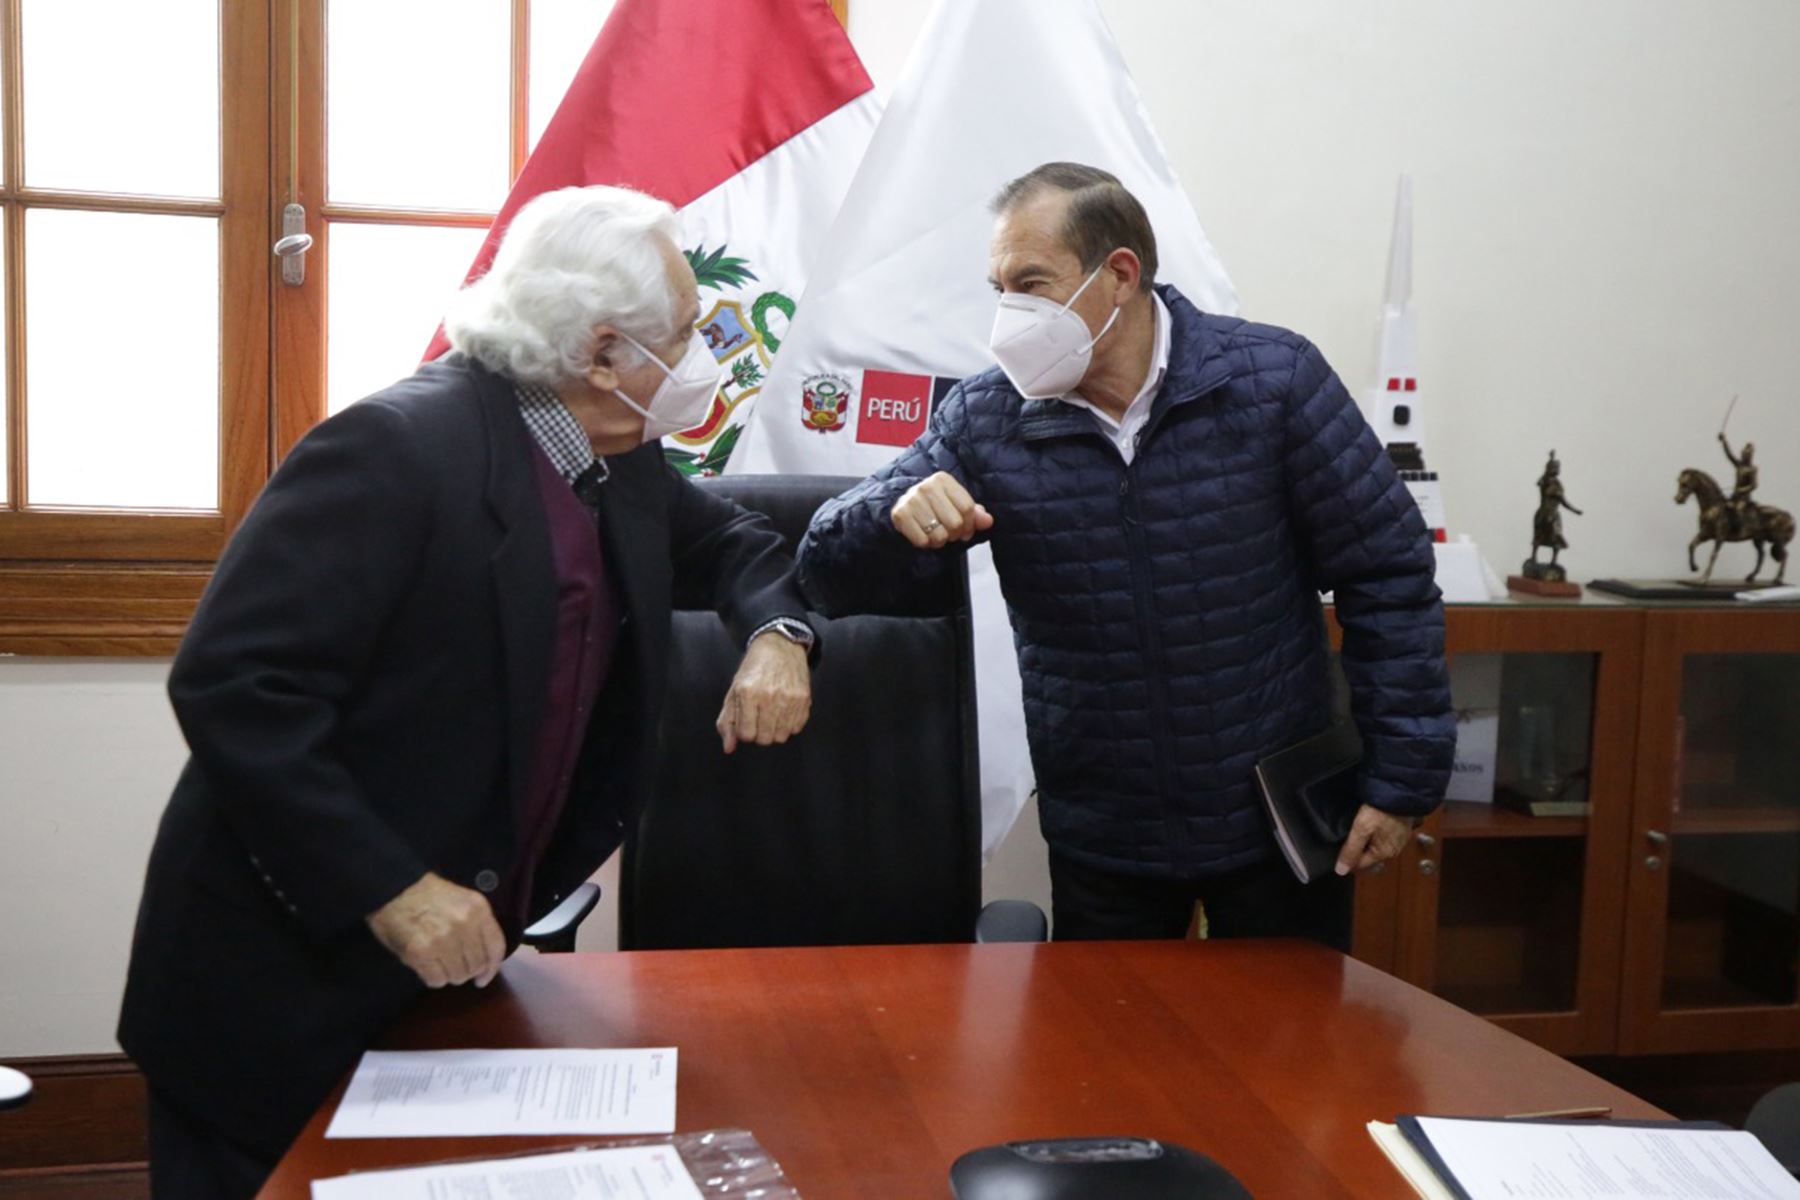 El jefe del Gabinete Ministerial, Walter Martos, sostuvo una reunión con el secretario ejecutivo del Acuerdo Nacional, Max Hernández, con el objetivo de coordinar aspectos relacionados a la convocatoria del denominado Pacto Perú.
Foto: PCM